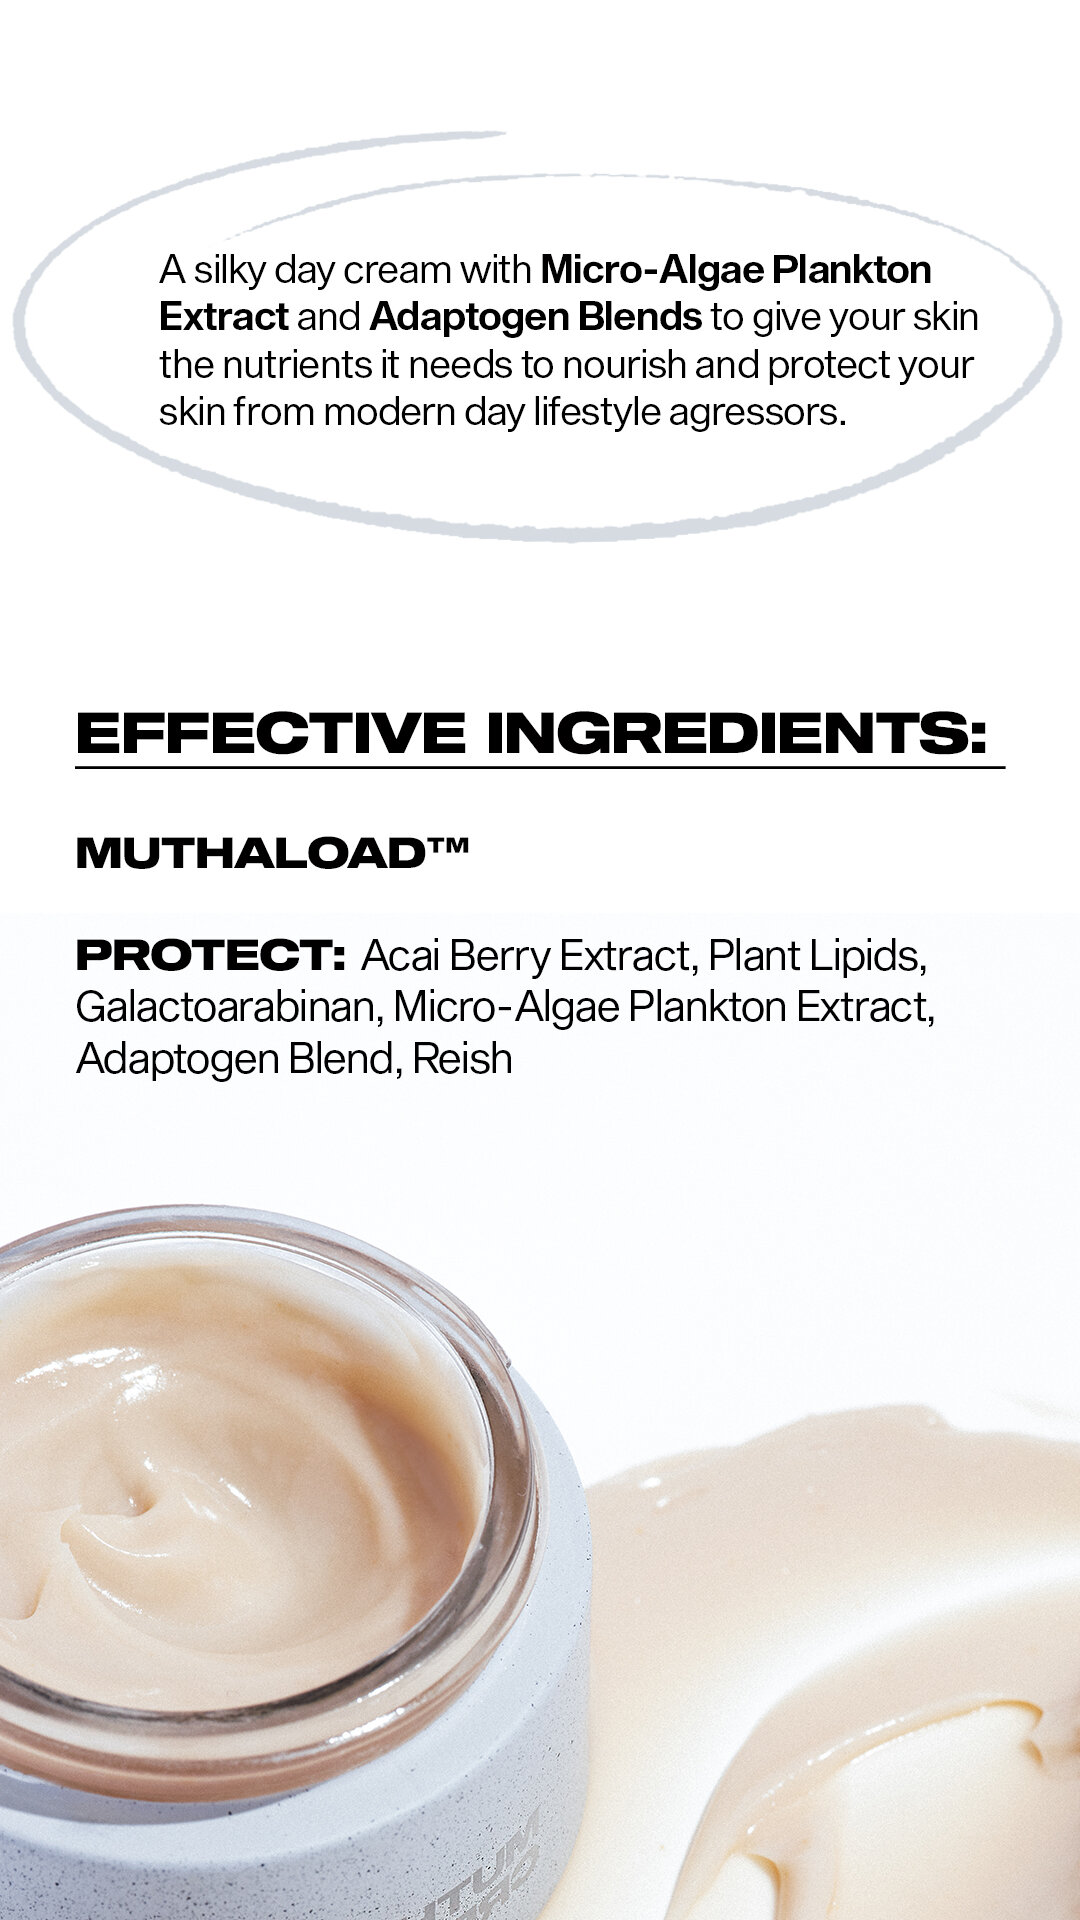 MUTHA_Cream_IG-HL_03_Ingredients.jpg